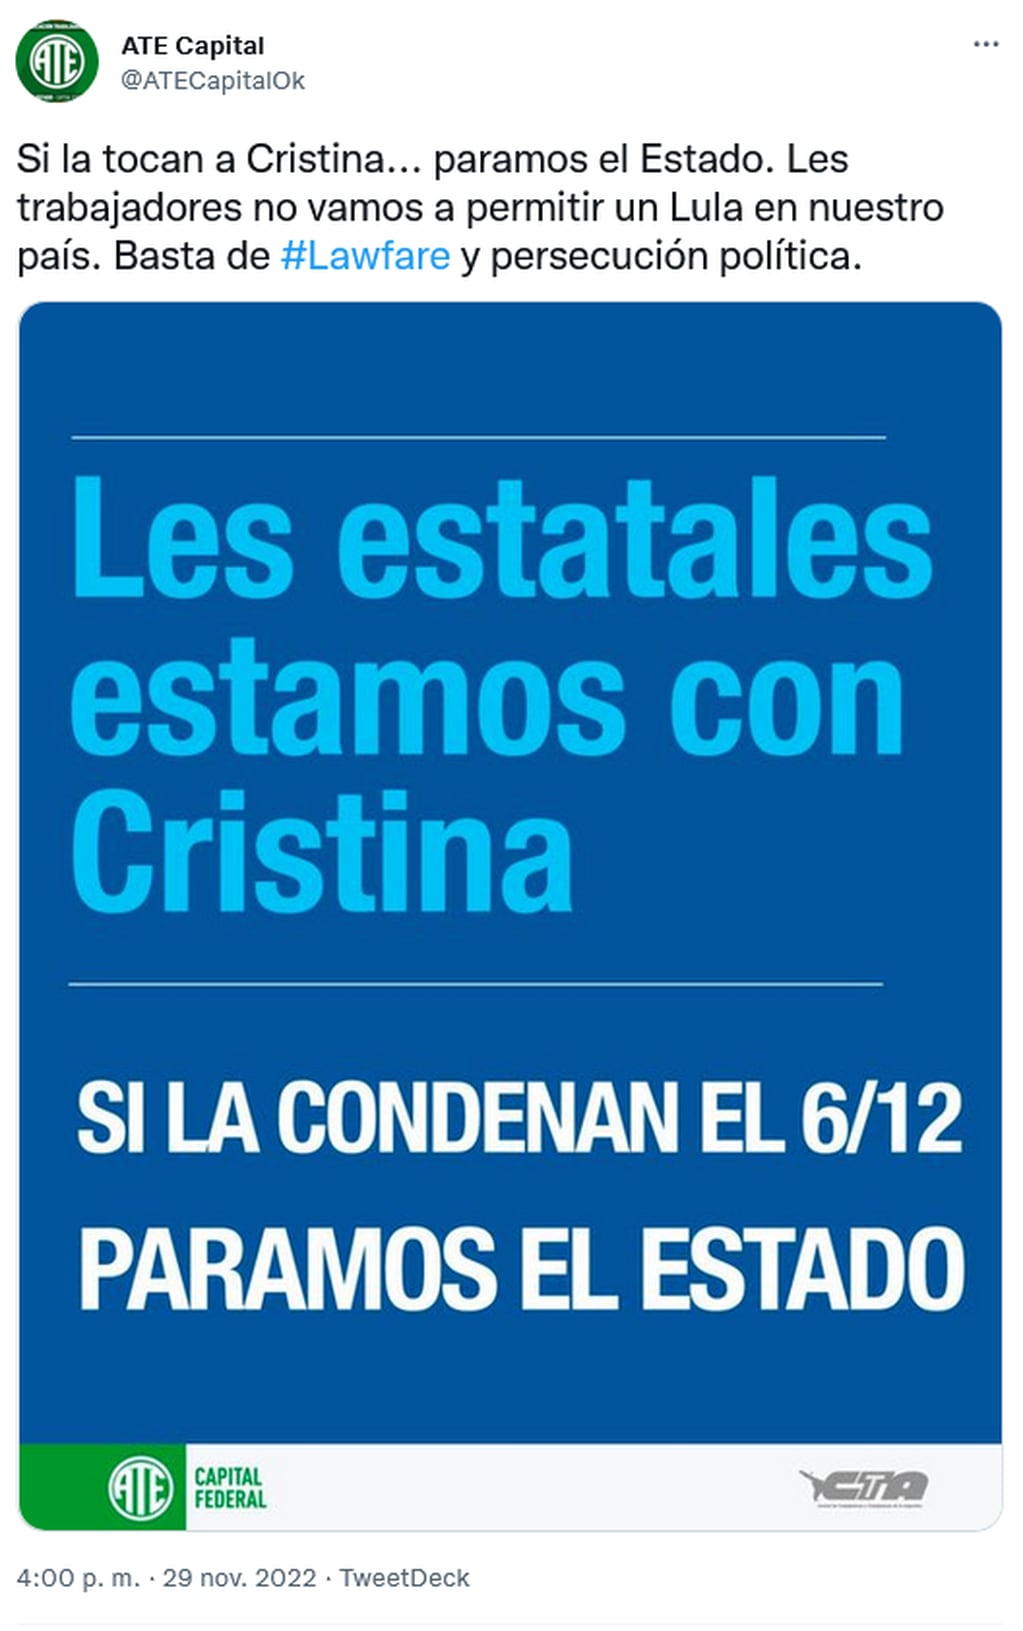 ATE aseguró que paralizará el Estado si Cristina Kirchner es condenada por corrupción. Twitter